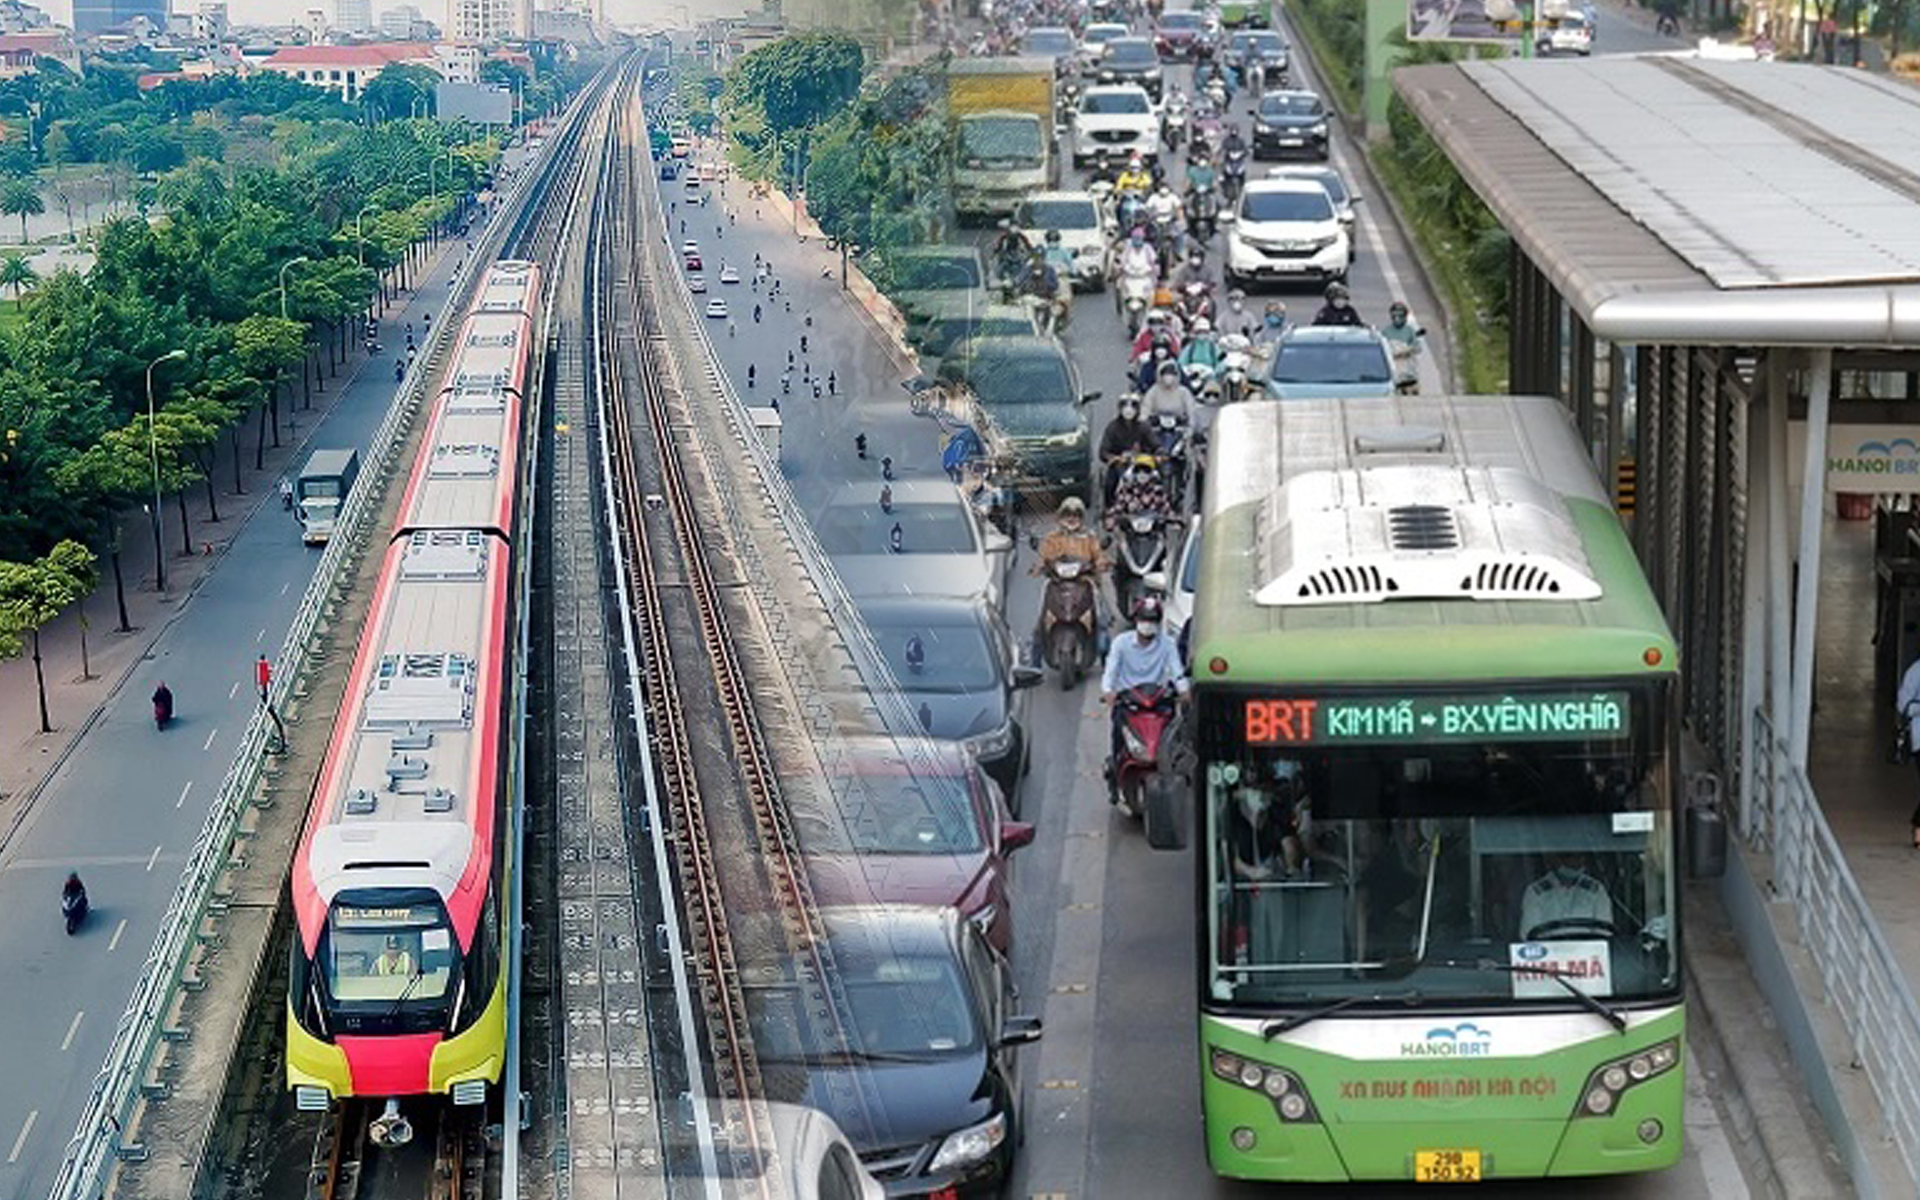 Hà Nội nói gì về thông tin thay buýt nhanh BRT bằng đường sắt đô thị?- Ảnh 2.